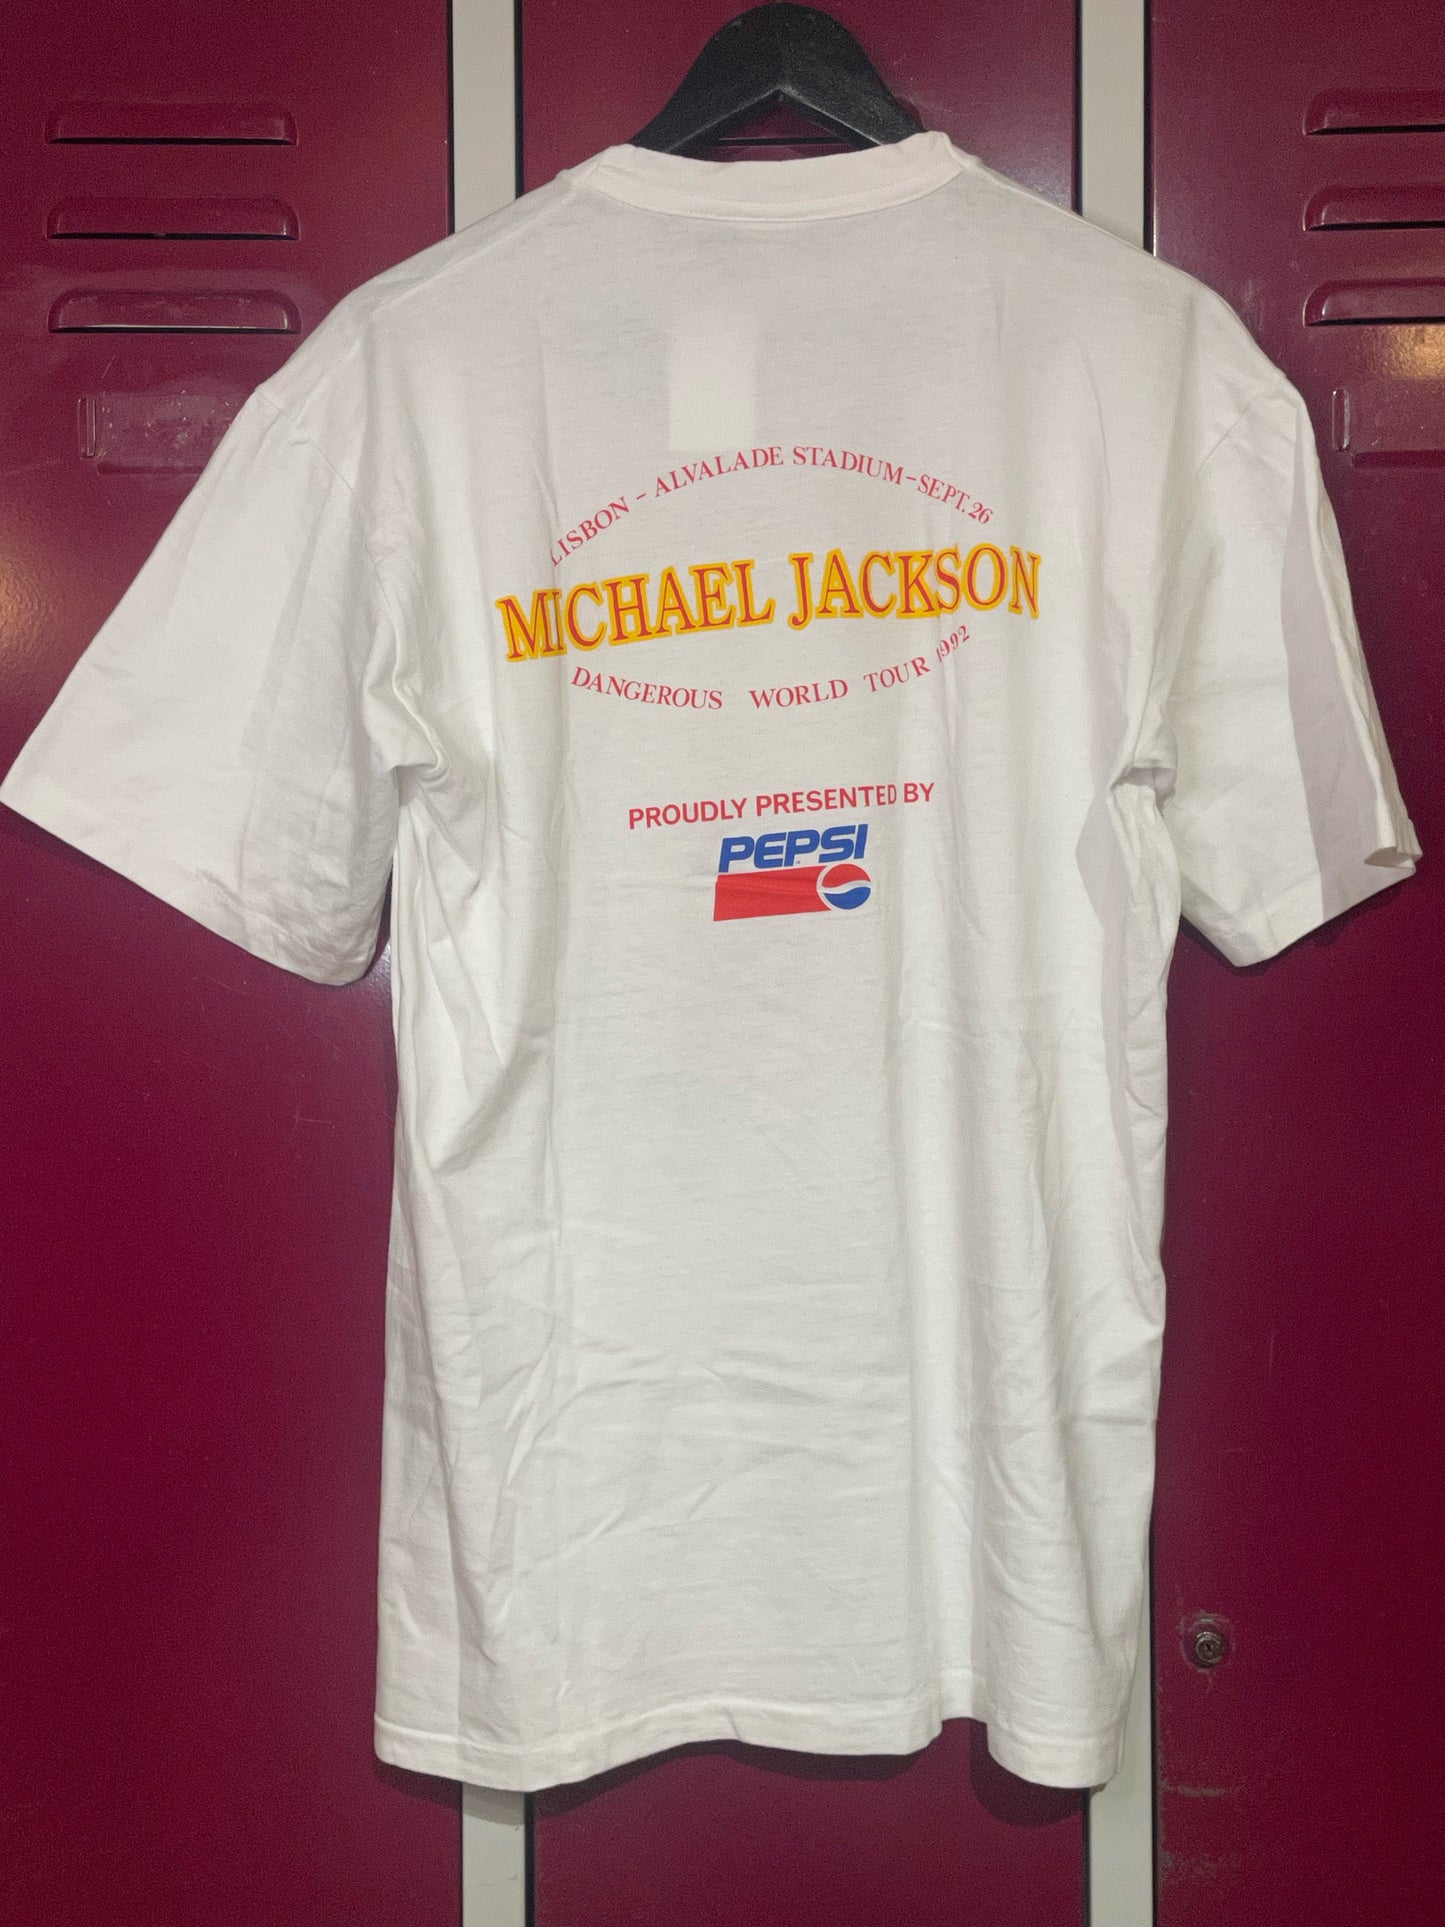 VINTAGE 1992 MICHAEL JACKSON "PEPSI DANGEROUS WORLD TOUR" MUSIC T-SHIRT  SZ: L